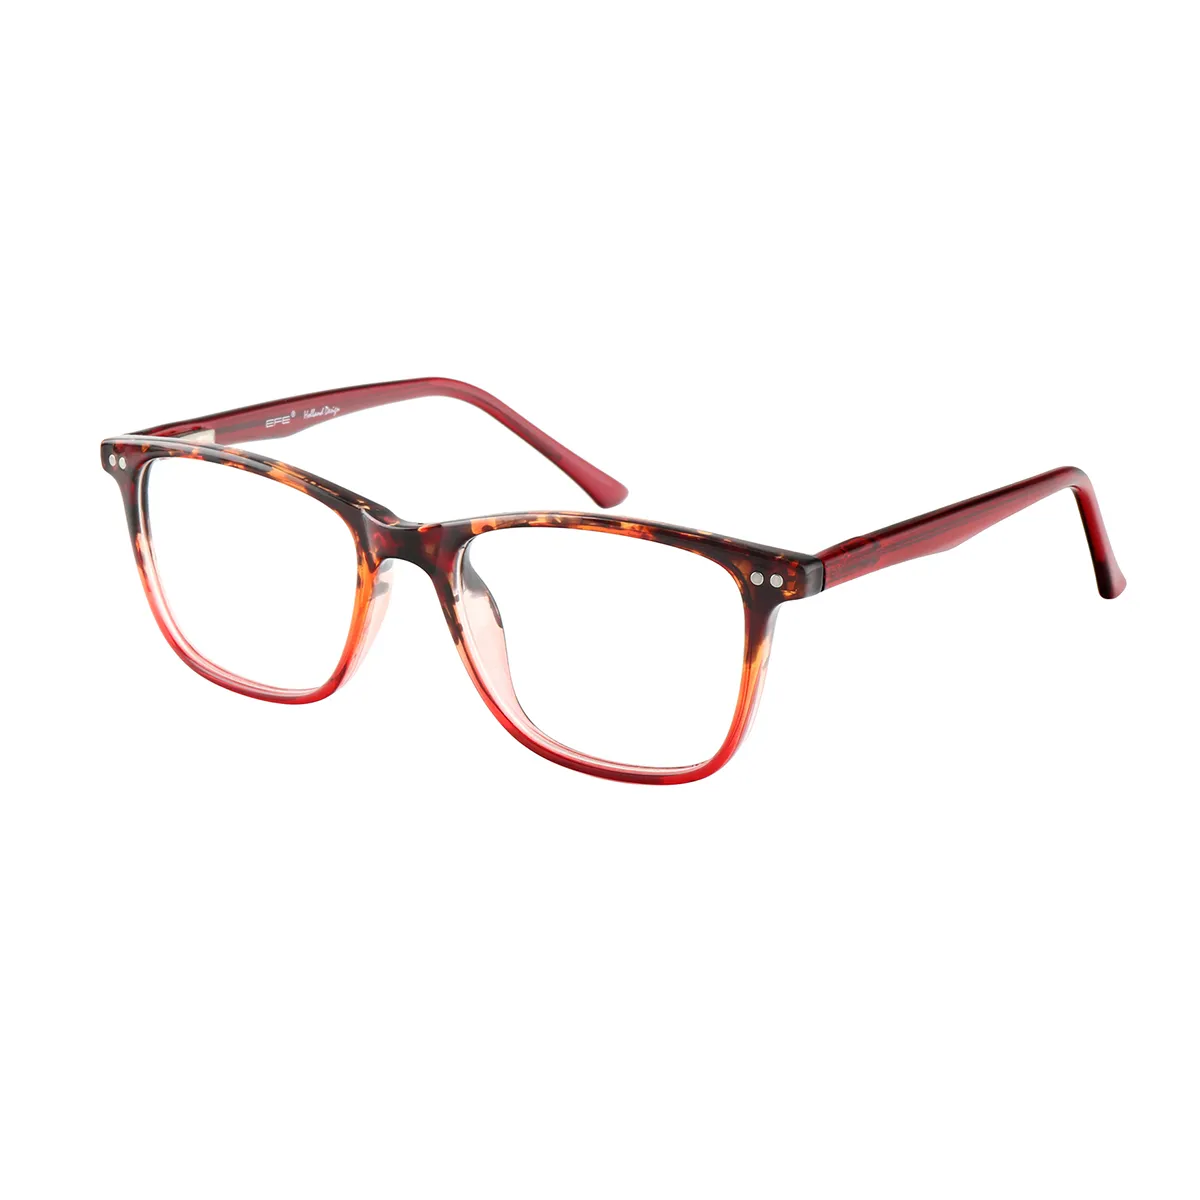 Gibbons - Rectangle Tortoiseshell Glasses for Men & Women